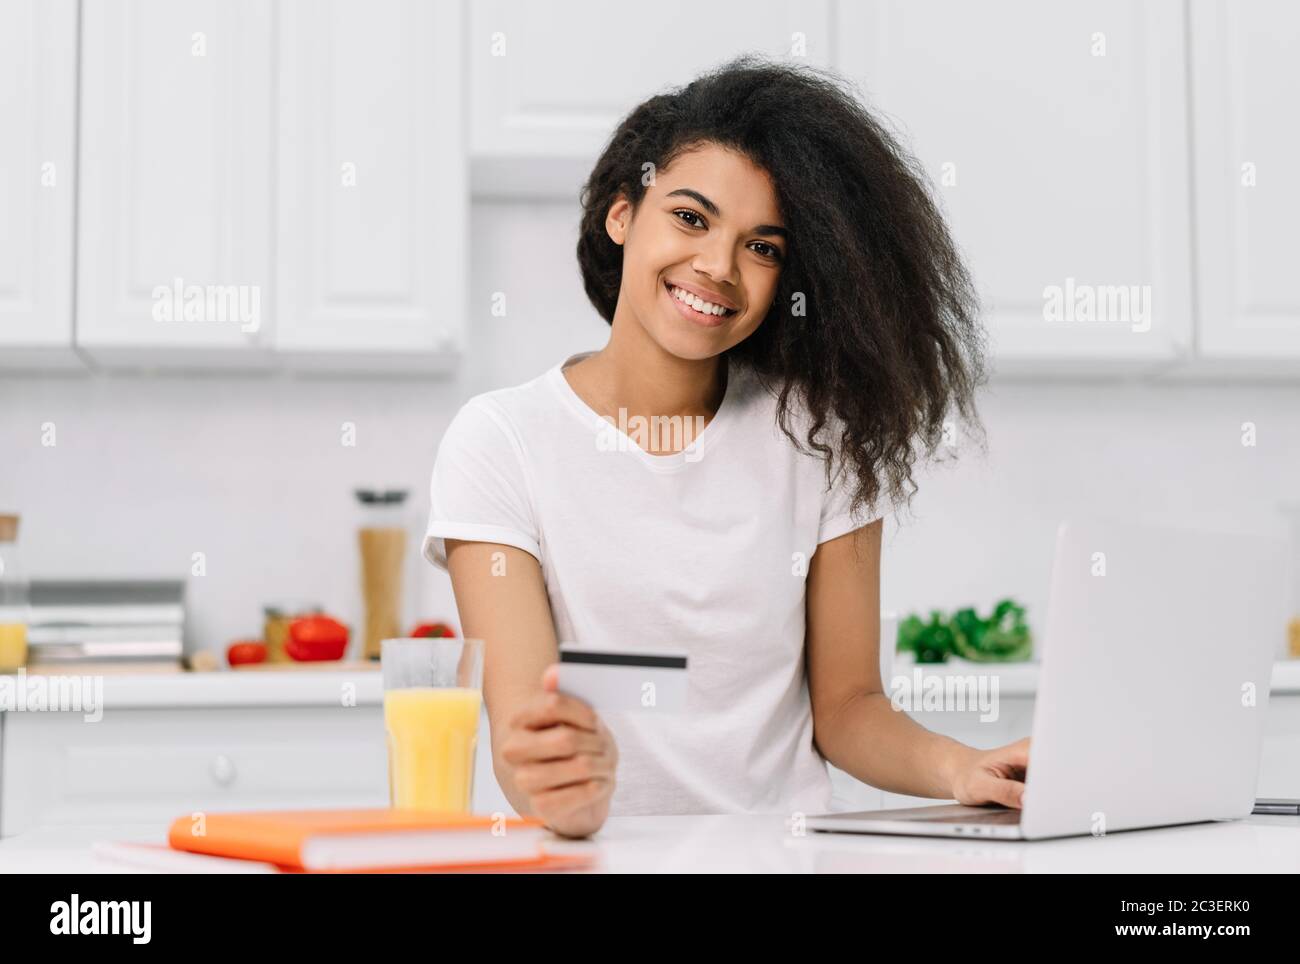 Glückliche afroamerikanische Frau, die online einkauft, Essen bestellt, auf der Küche steht Stockfoto